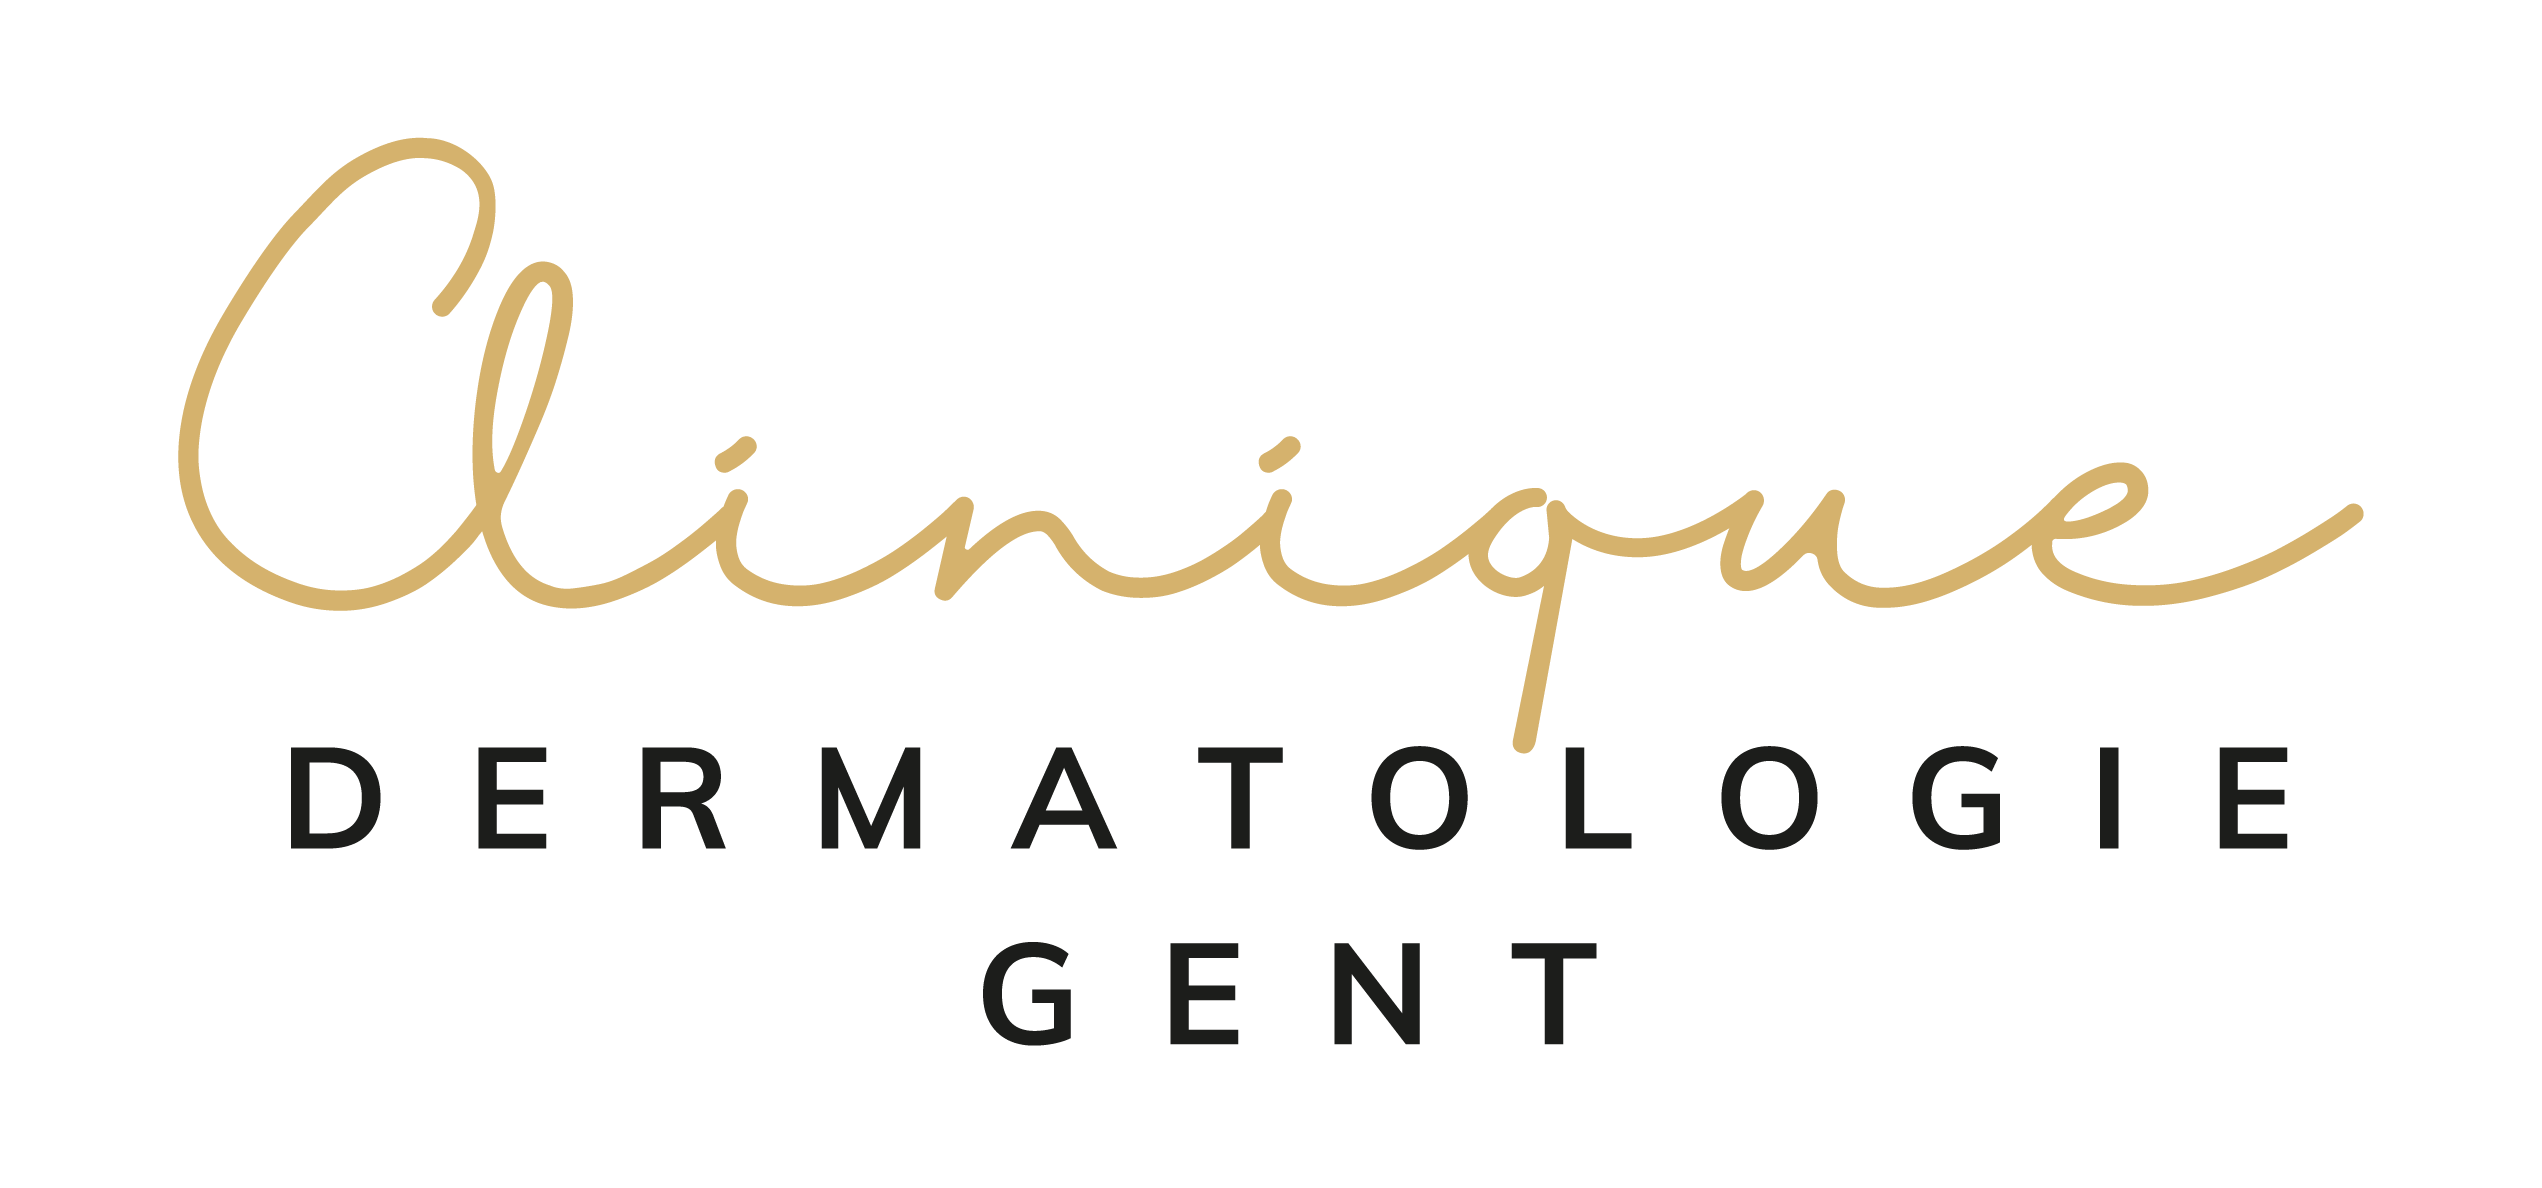 Dermatologie Gent